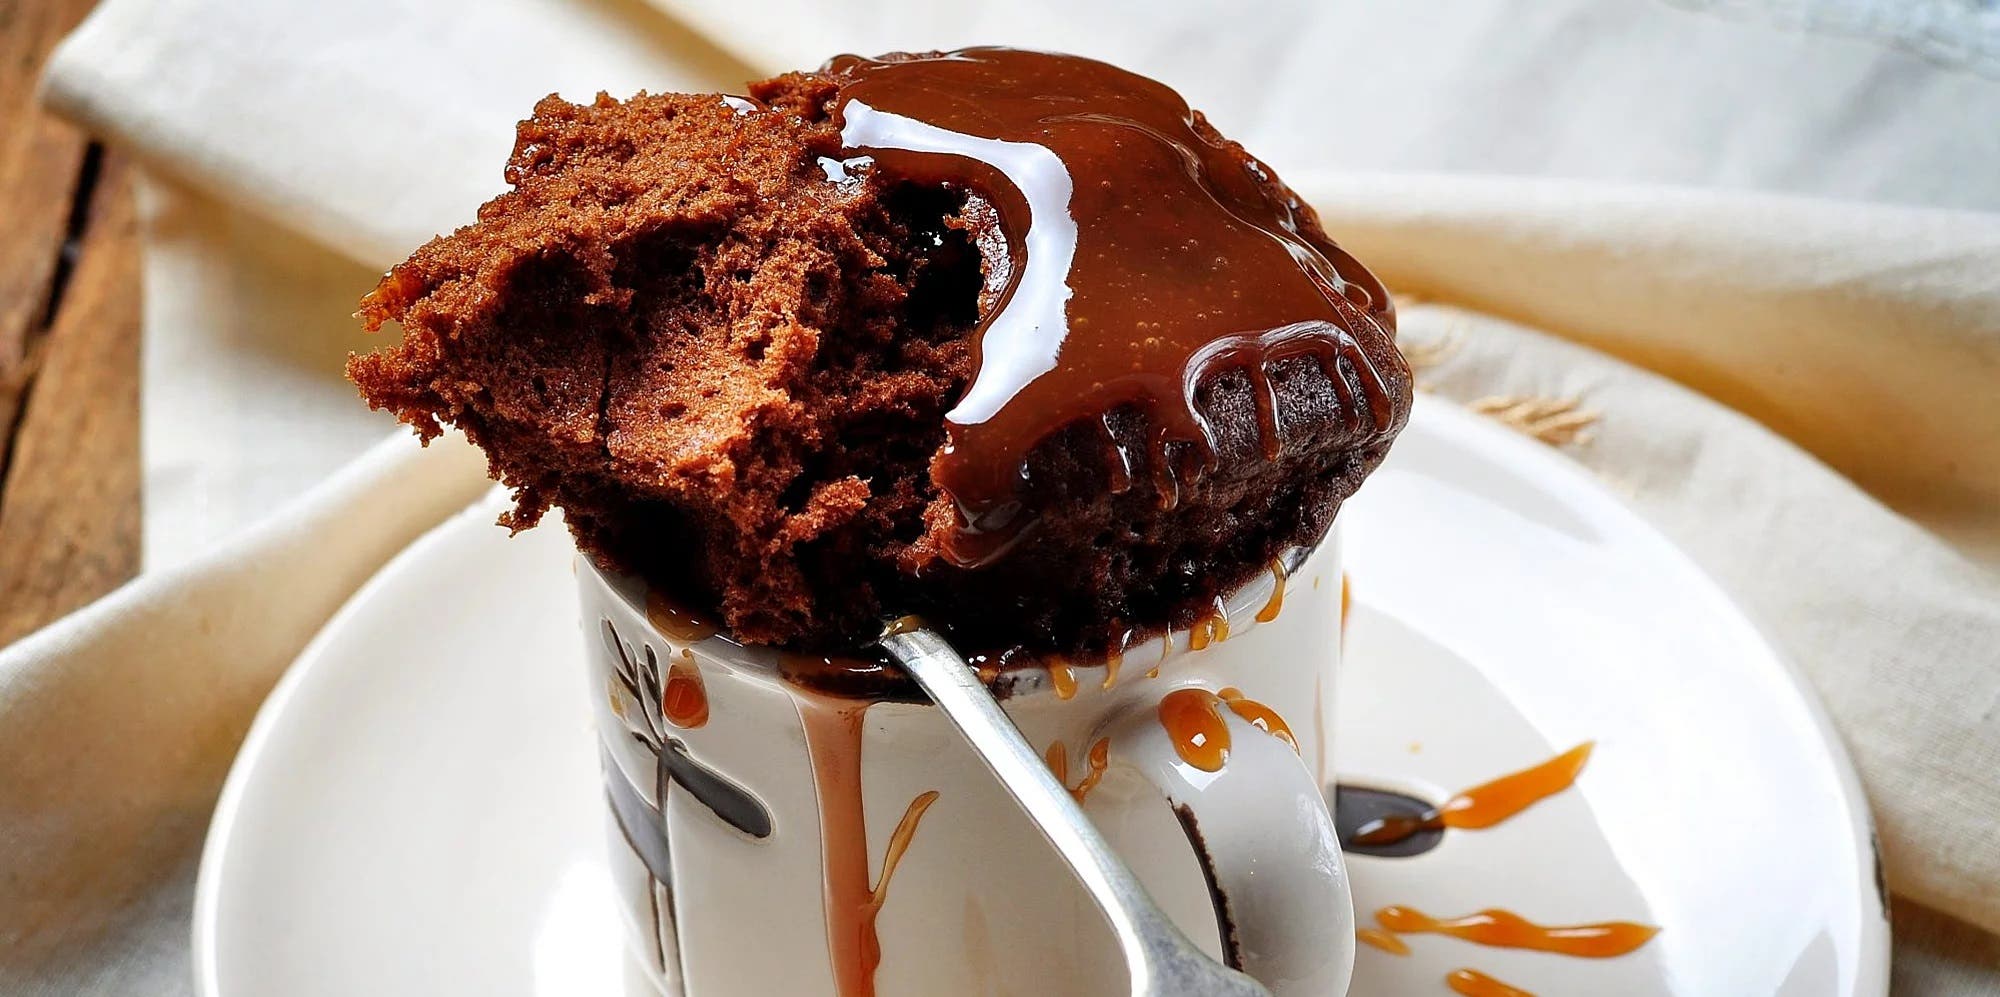 Torta de chocolate en taza: se hace en 2 minutos con el microondas